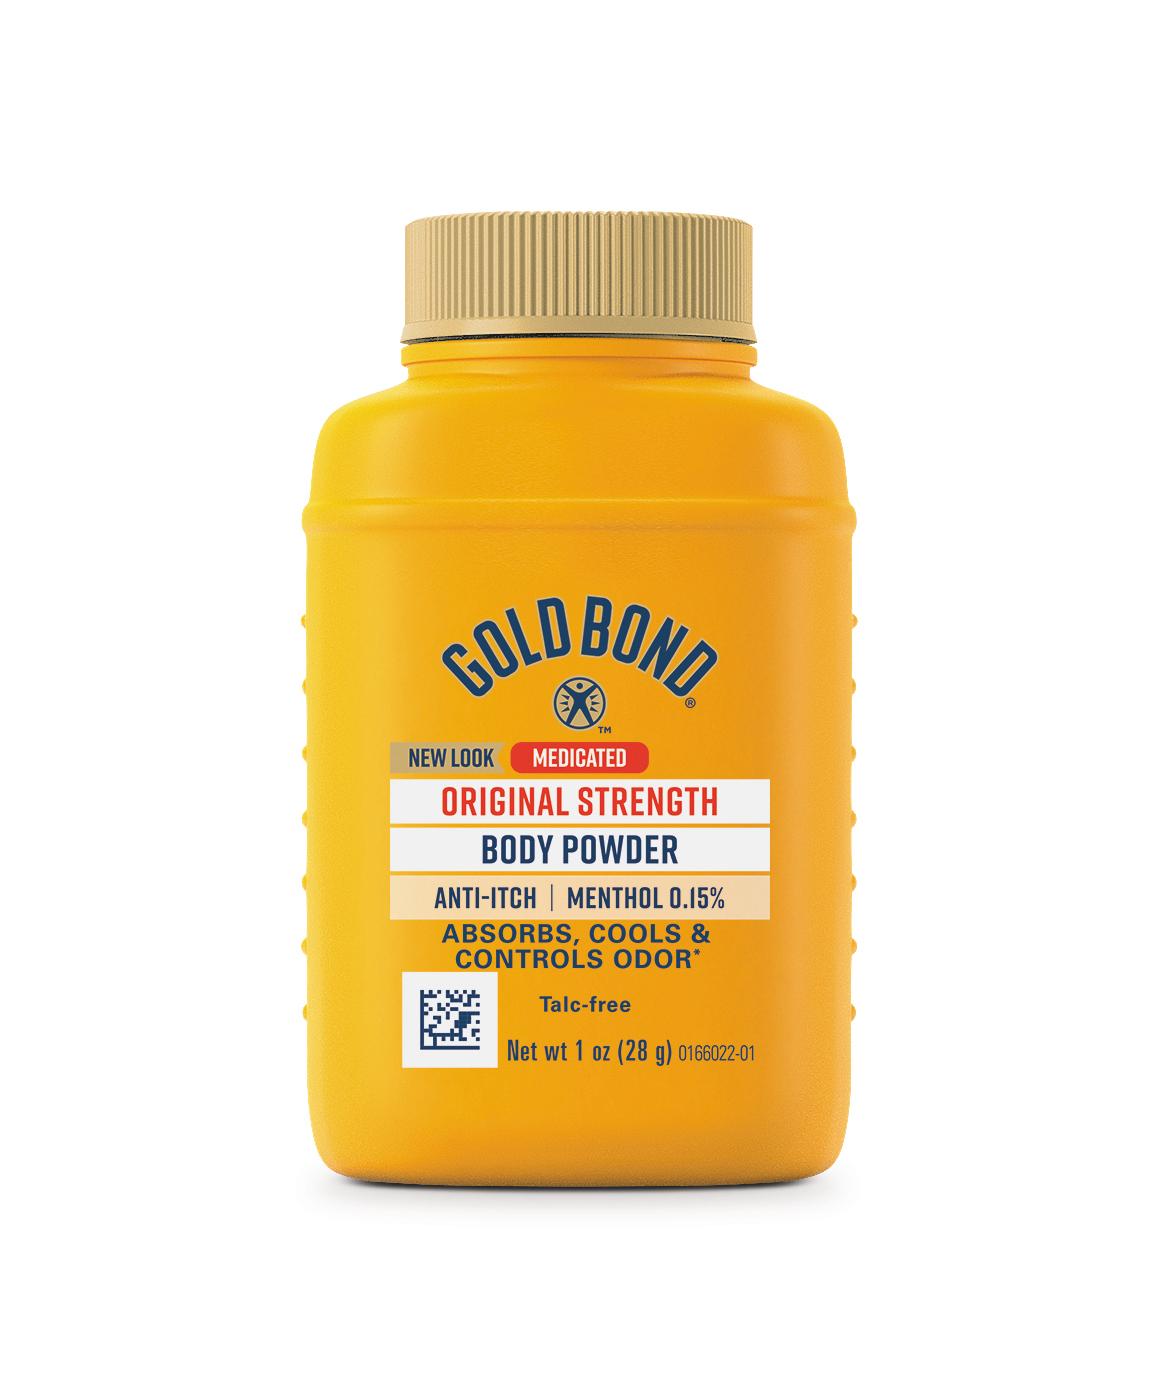 Gold Bond Medicated Original Strength Body Powder; image 1 of 2